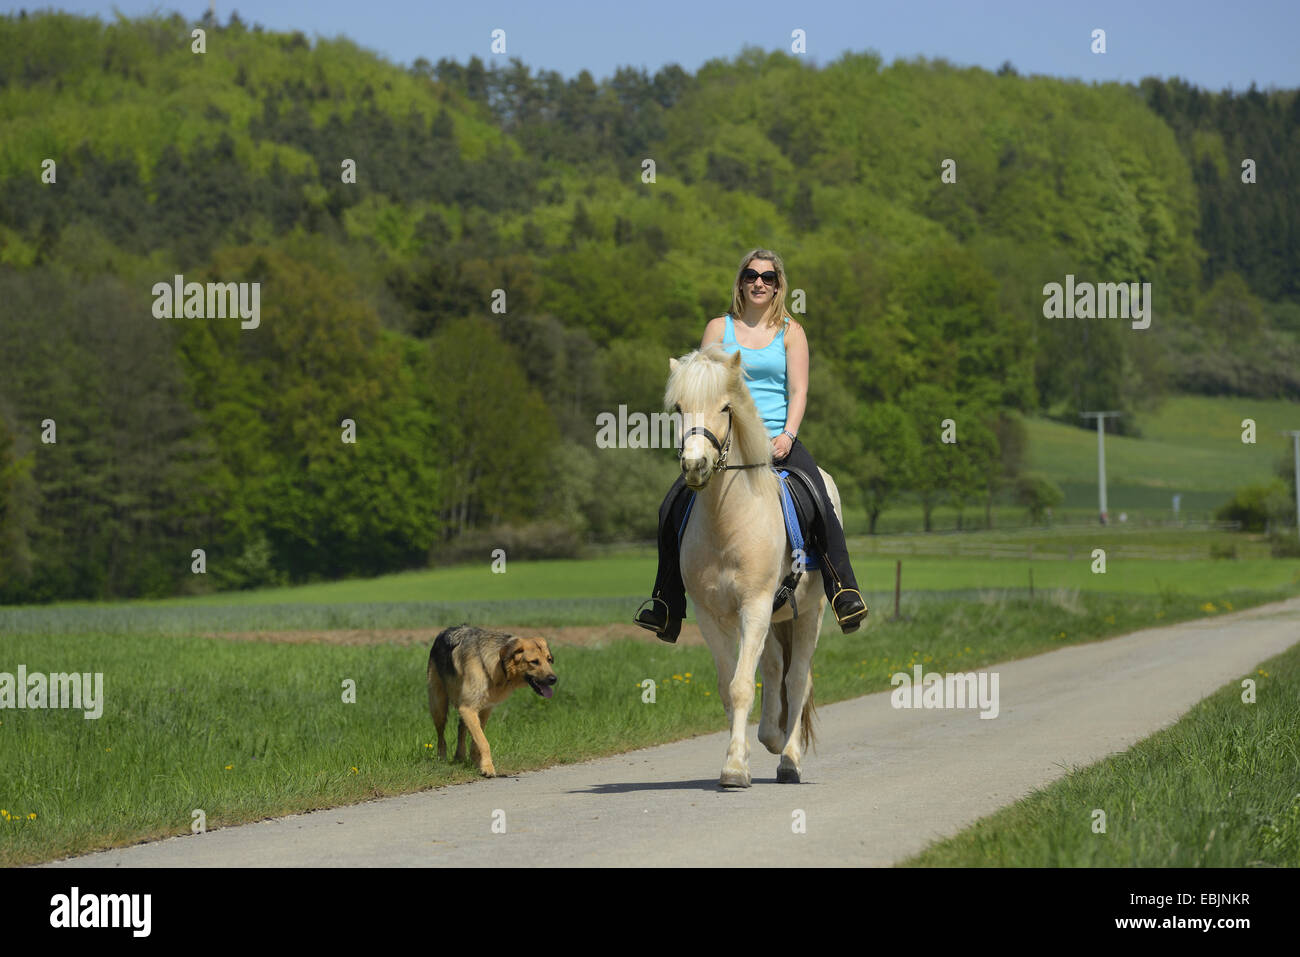 Isländisches Pferd, Islandpferd, Island Pony (Equus Przewalskii F. Caballus), junges Mädchen reiten durch eine Landschaft von Wald und Wiese auf einem Pony, begleitet von einem Mischling Hund, Deutschland, Bayern, Oberpfalz Stockfoto